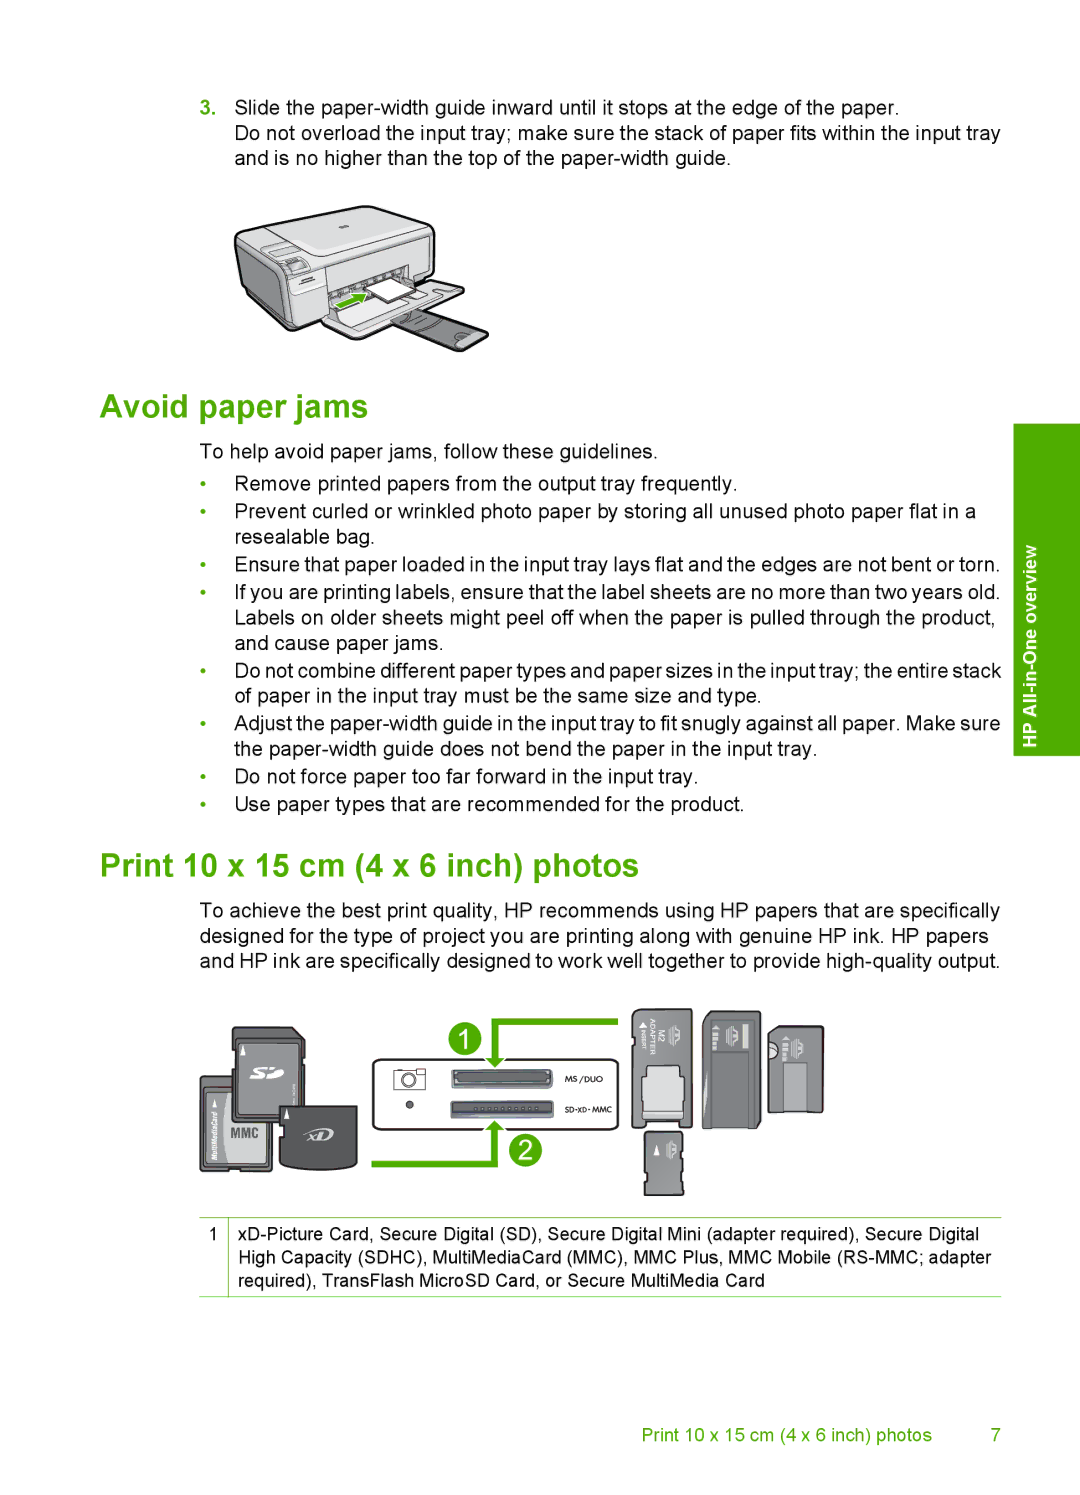 HP C4440, C4485, C4472, C4480, C4435 manual Avoid paper jams, Print 10 x 15 cm 4 x 6 inch photos 